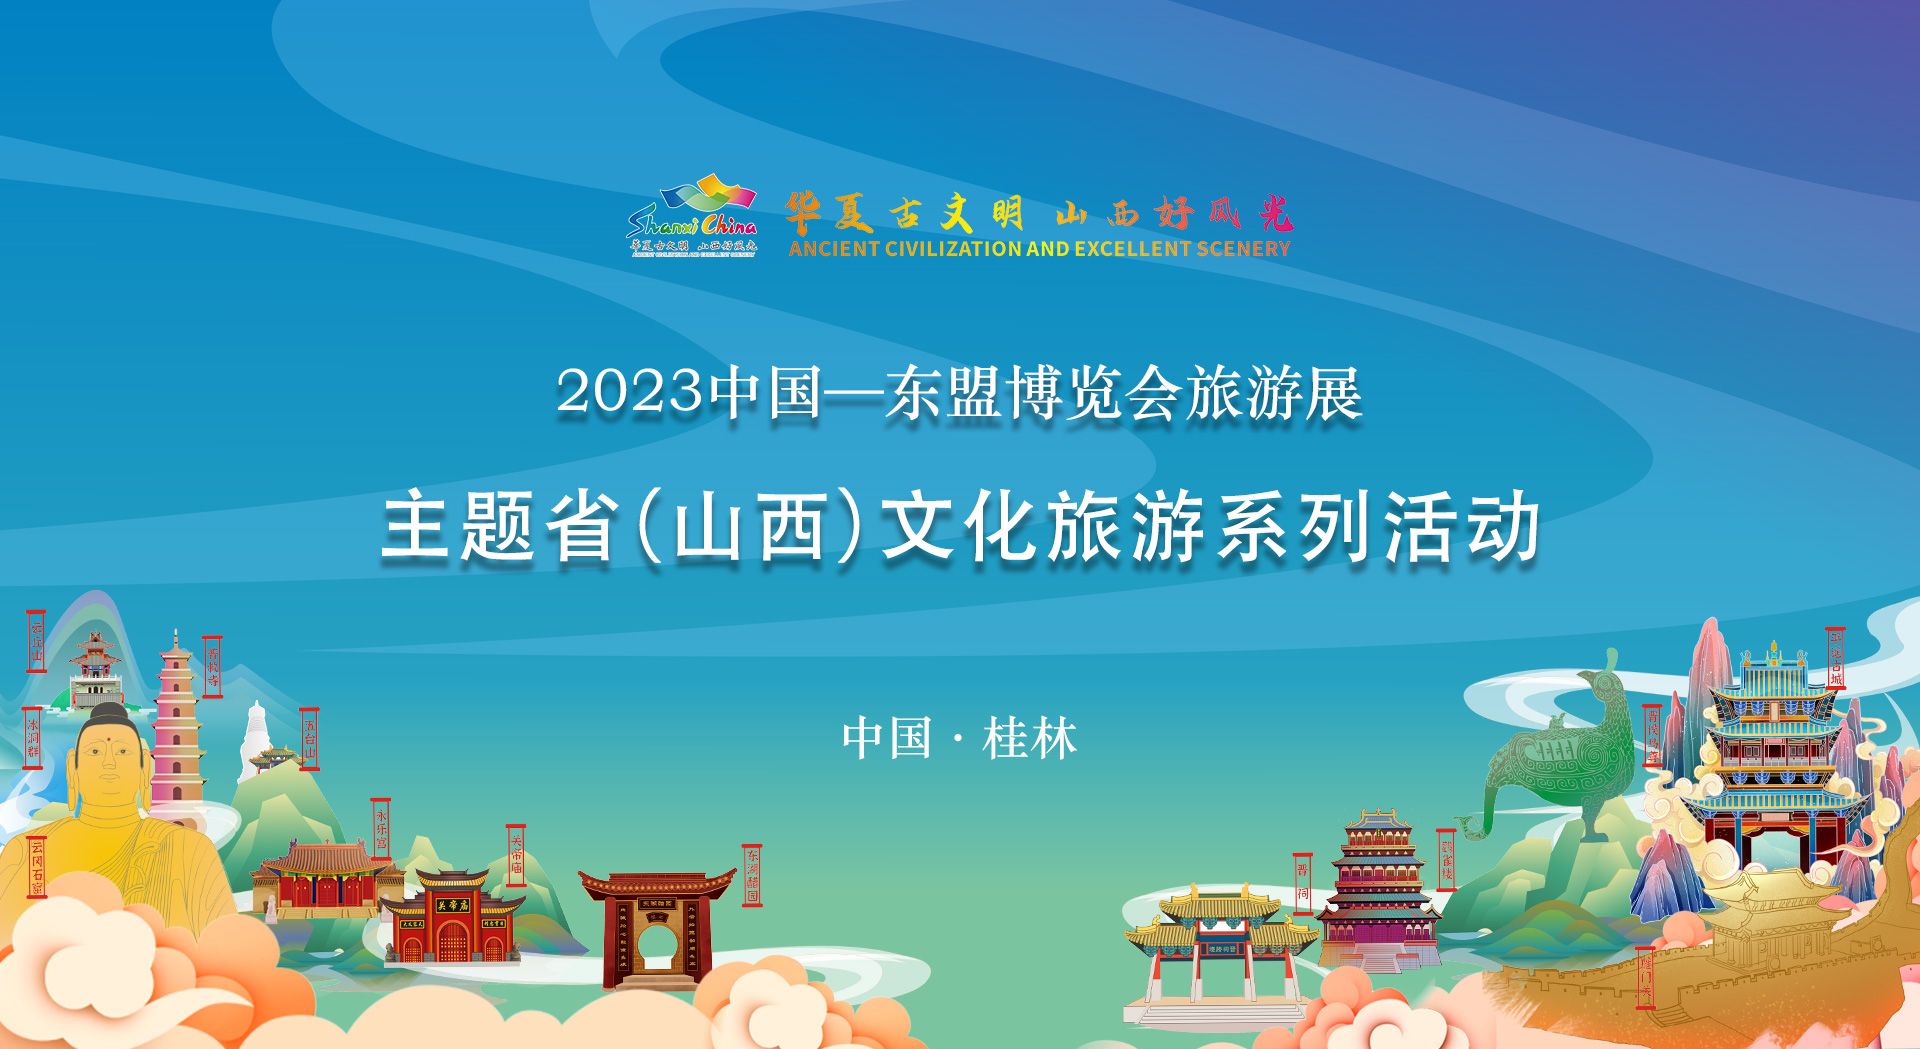 2023中国-东盟博览会旅游展